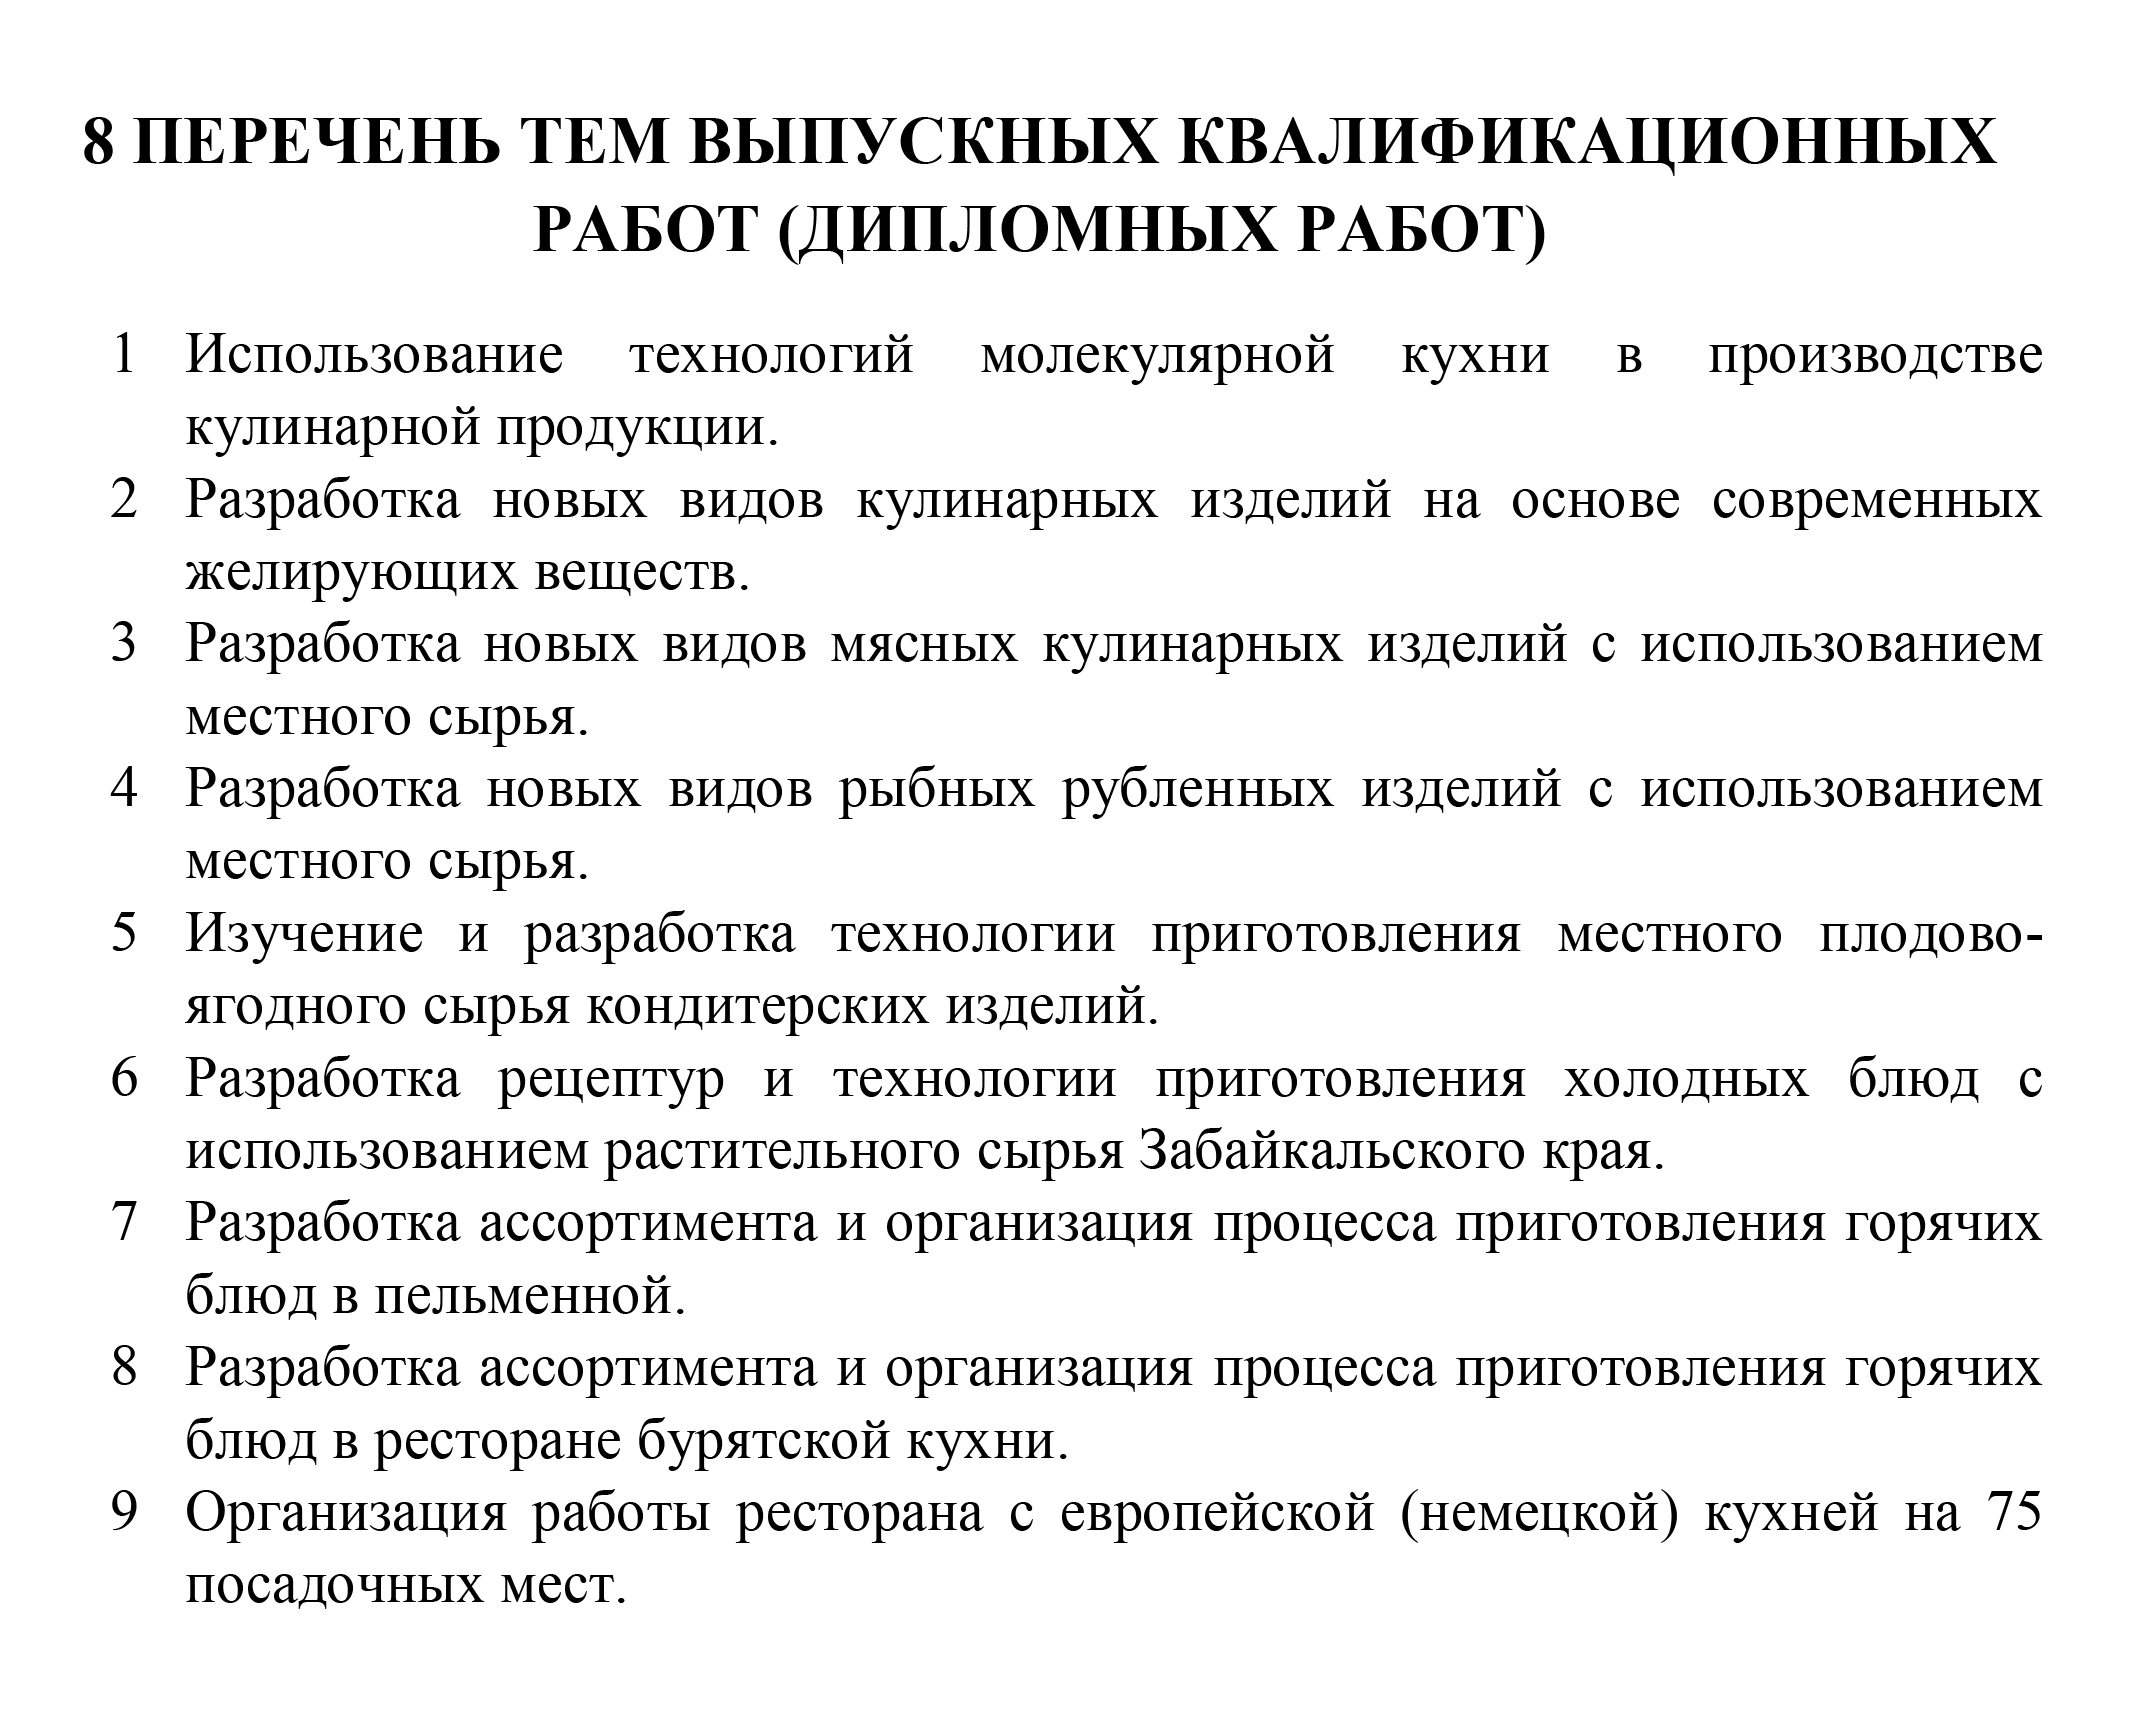 Забайкальский государственный колледж приводит перечень тем для дипломной работы. Источник: zabgoscoll.ru